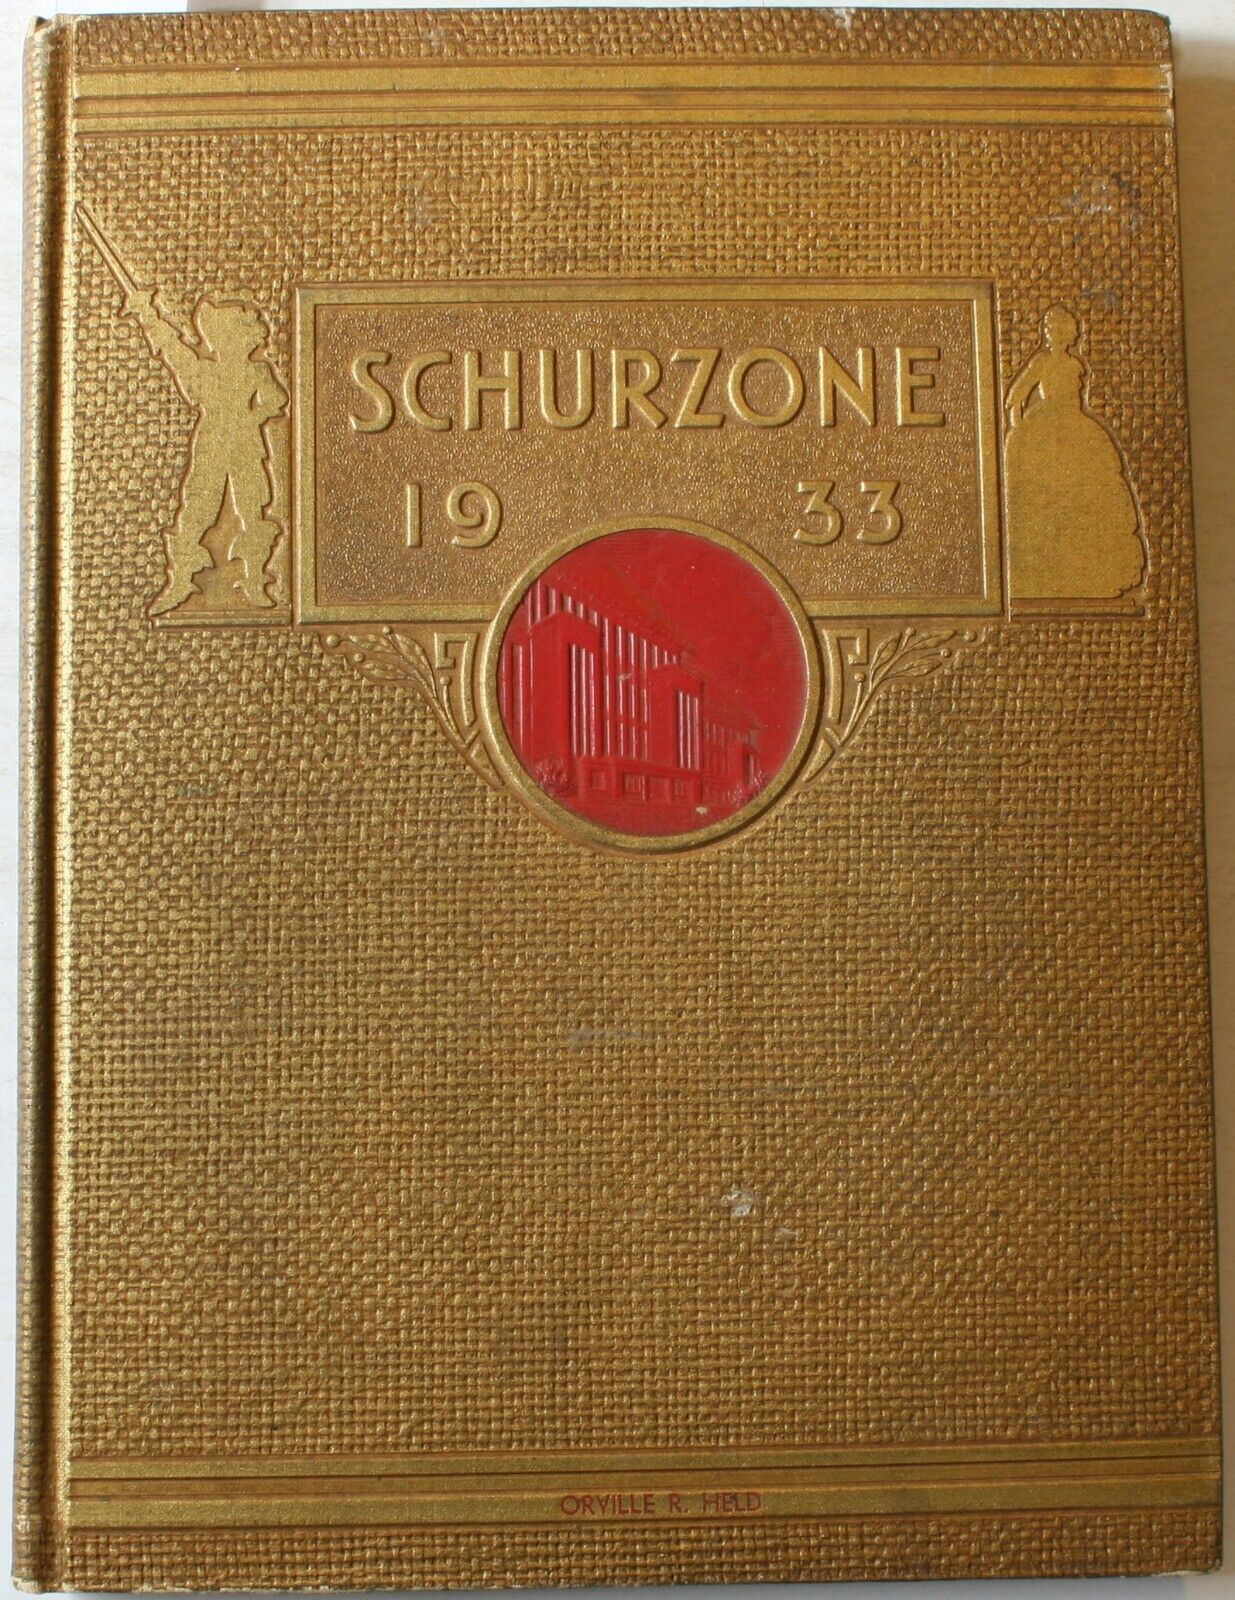 1933 Carl Schurz High School Yearbook Chicago Illinois Schurzone Feb 33